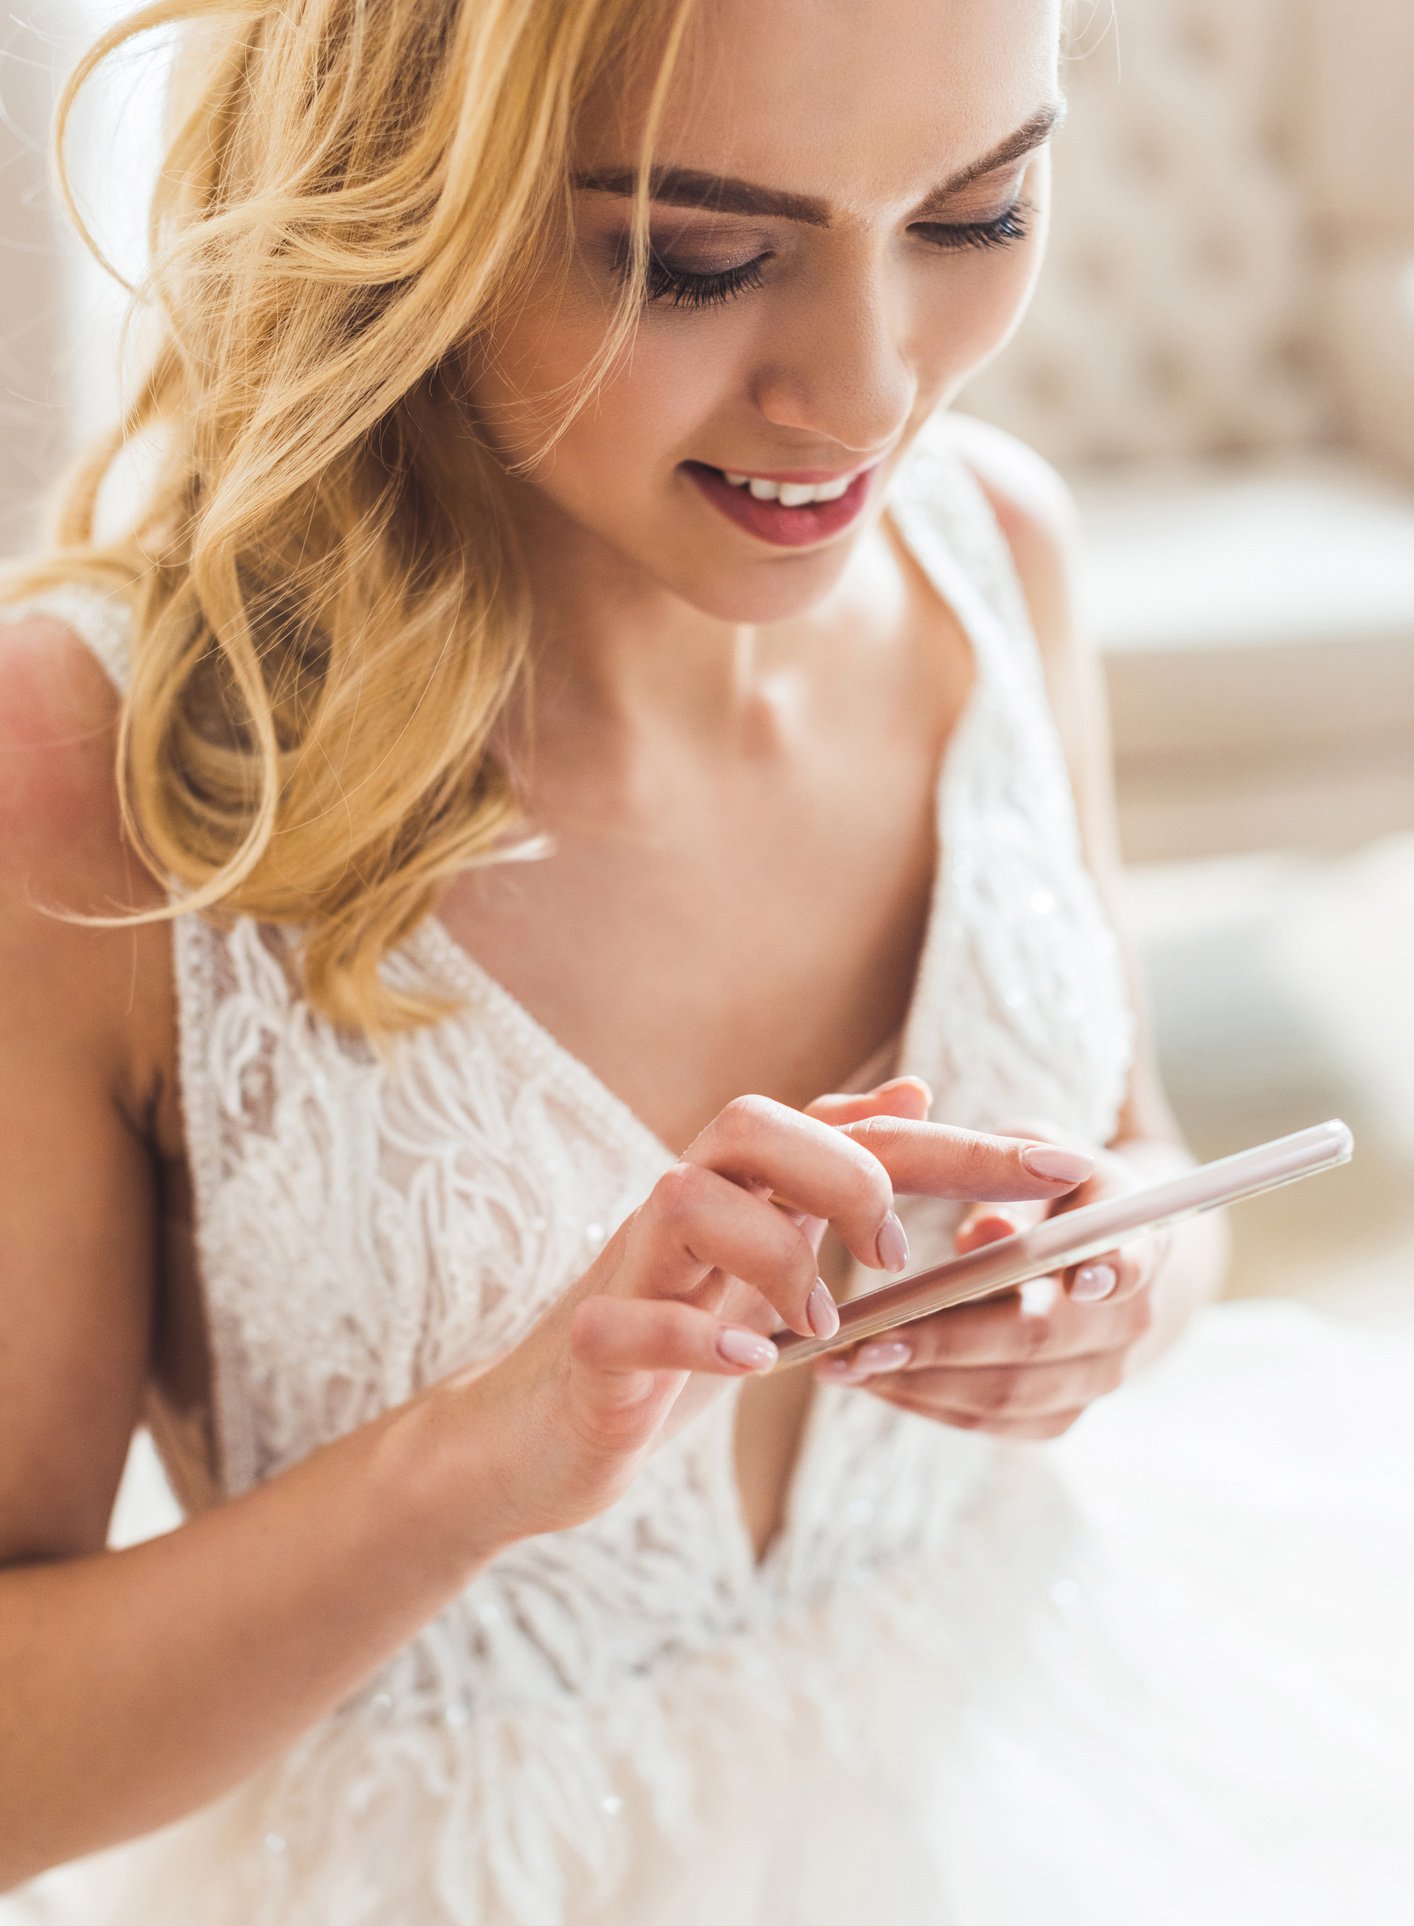 MissNowMrs name change app for brides